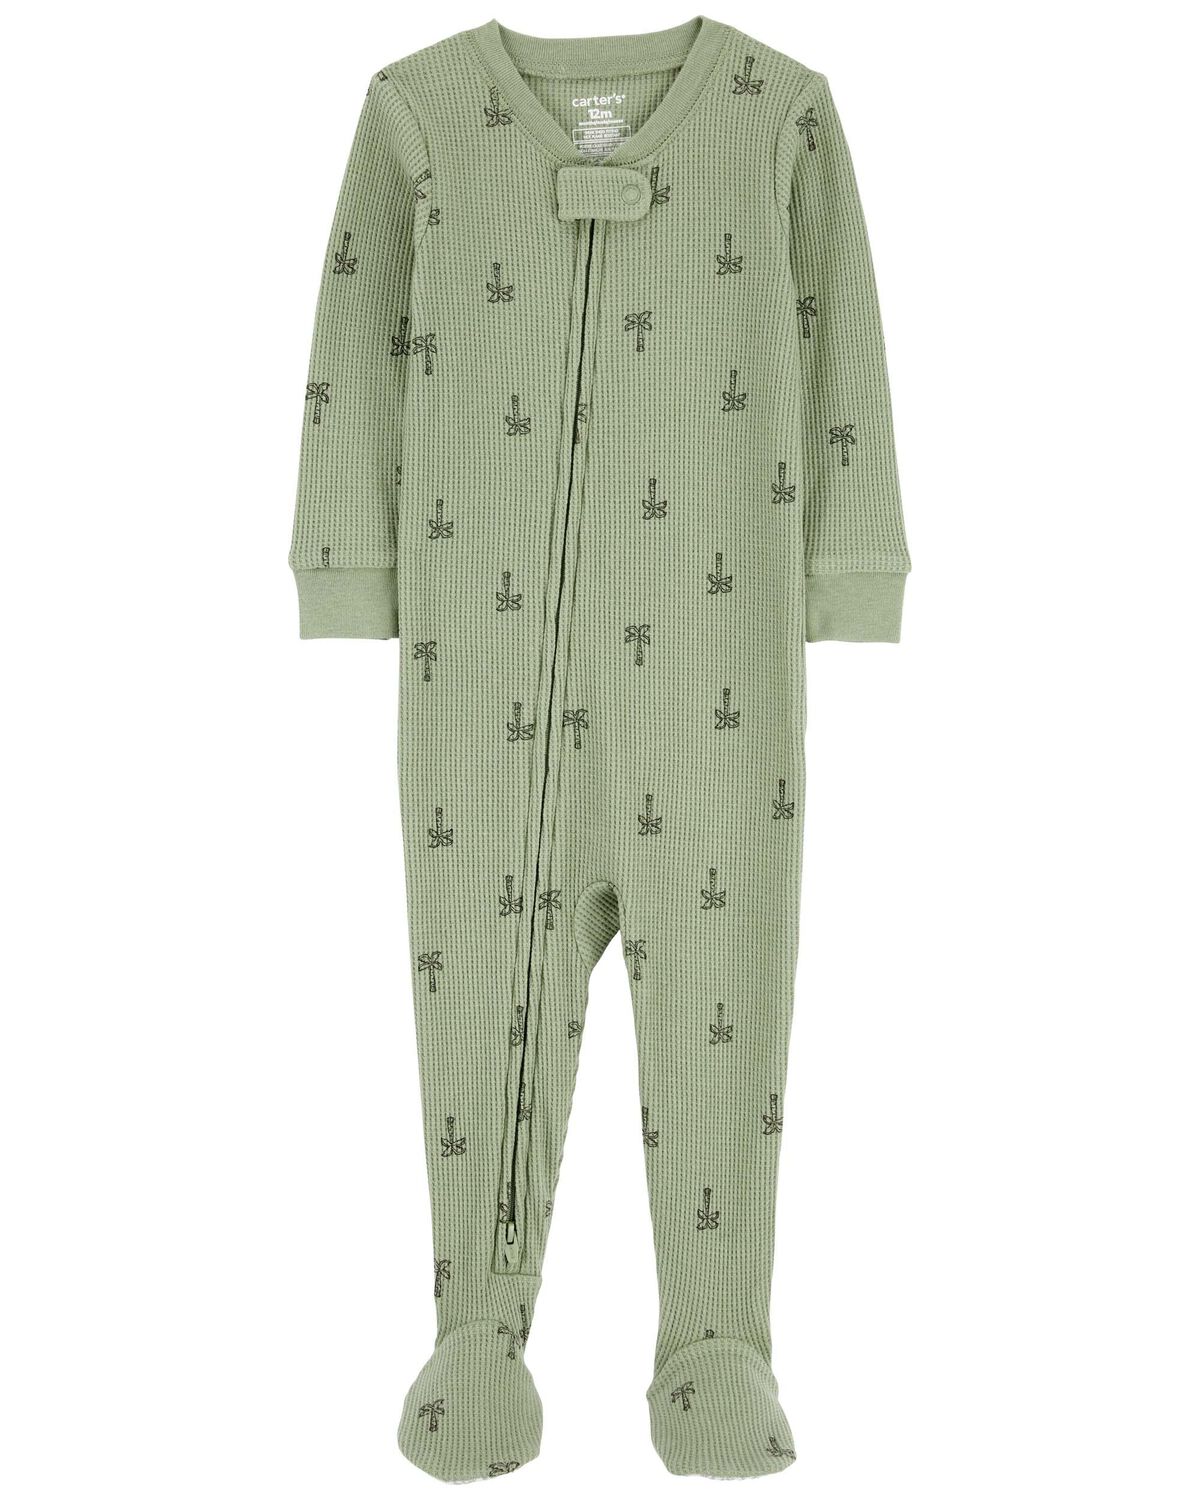 Baby 1-Piece Palm Tree Thermal Footie Pajamas